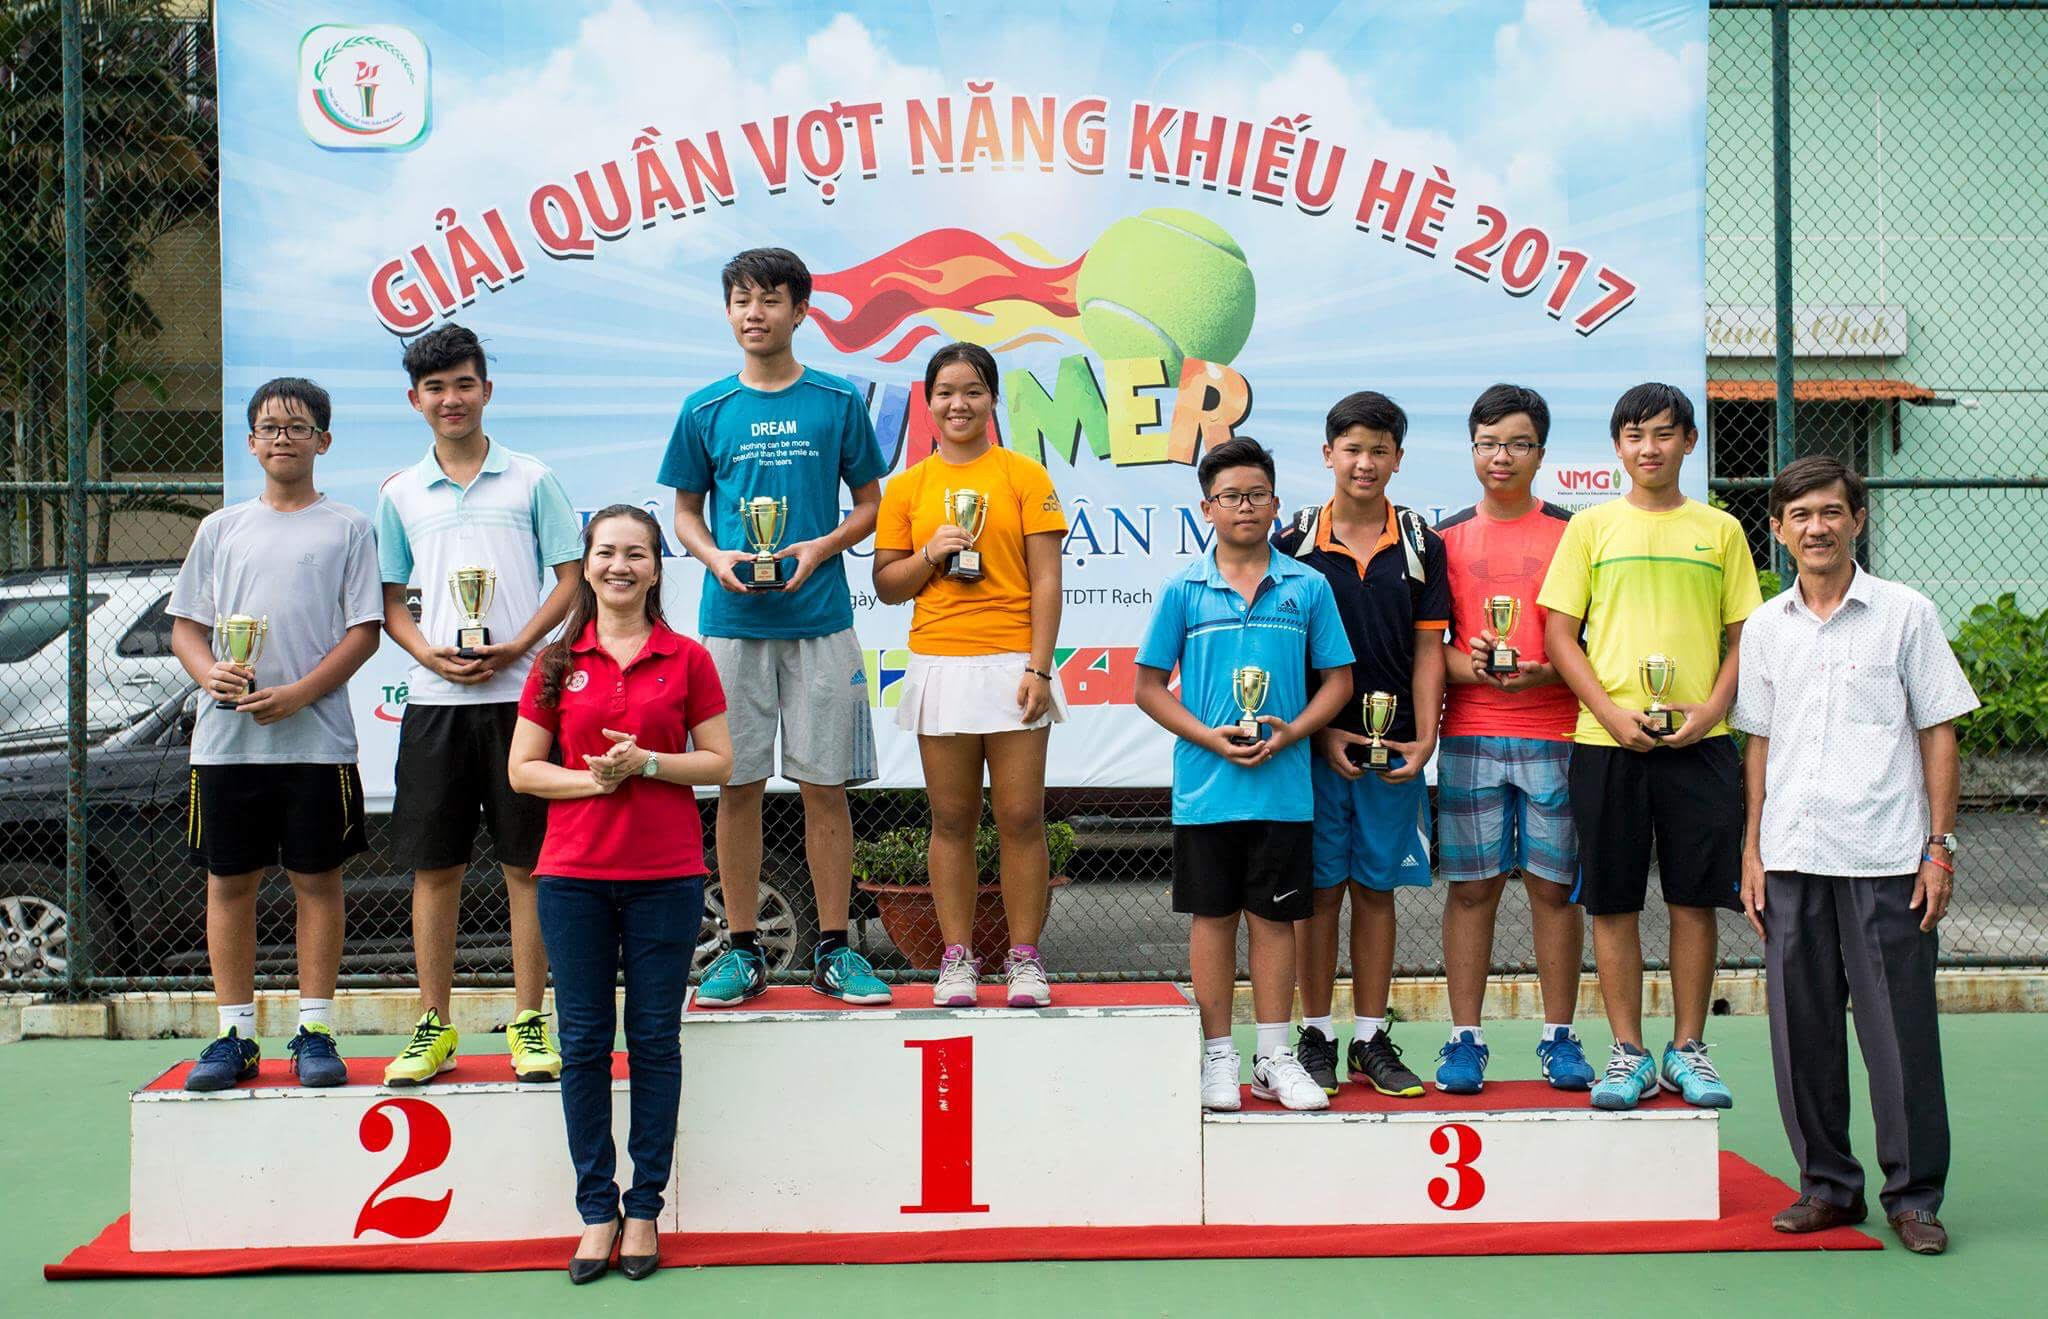 Giải Quần vợt Năng khiếu hè quận Phú nhuận mở rộng năm 2017